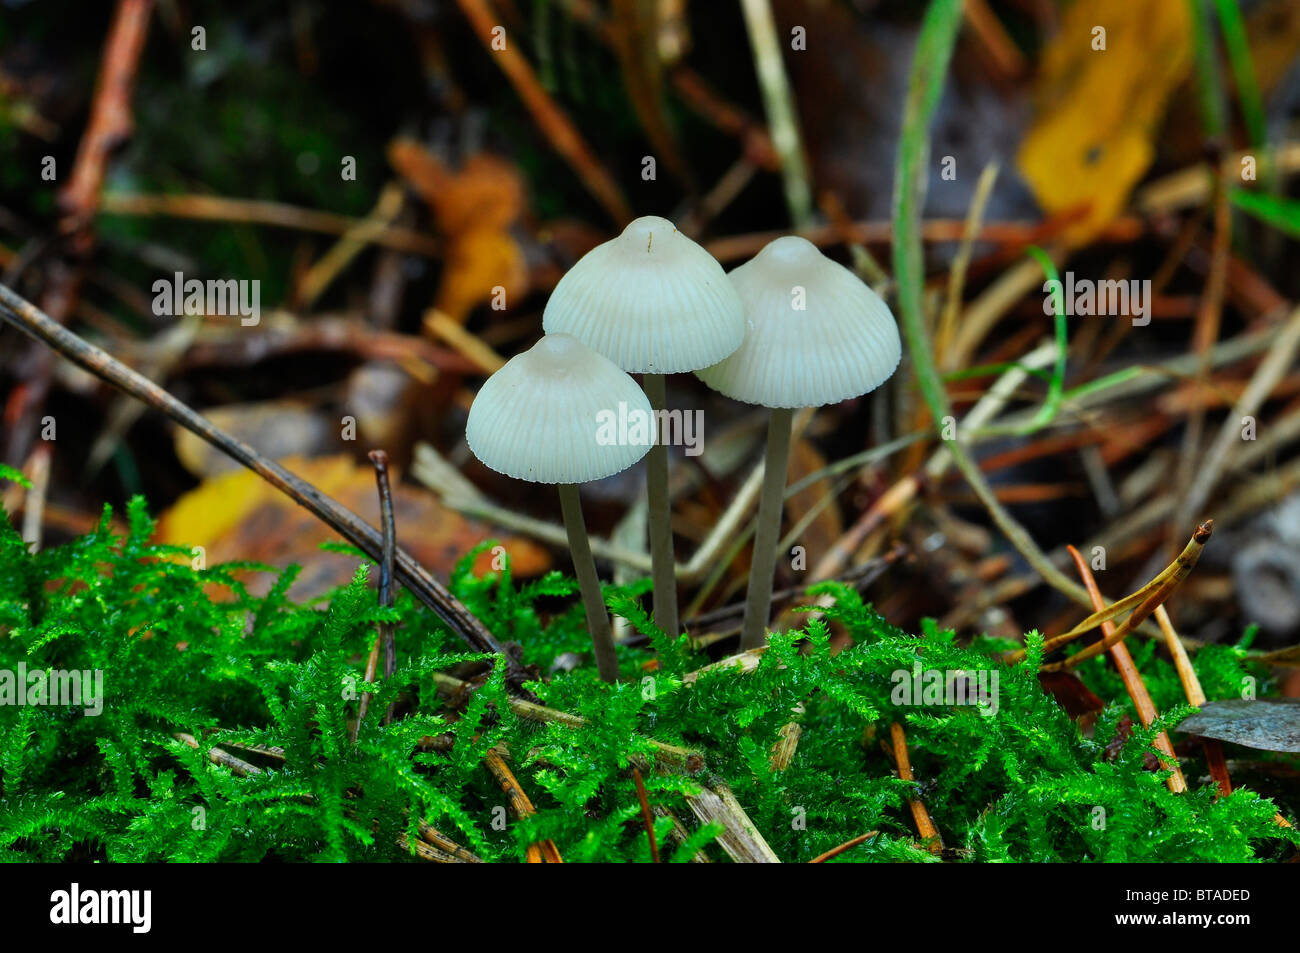 Wild British mushrooms Stock Photo